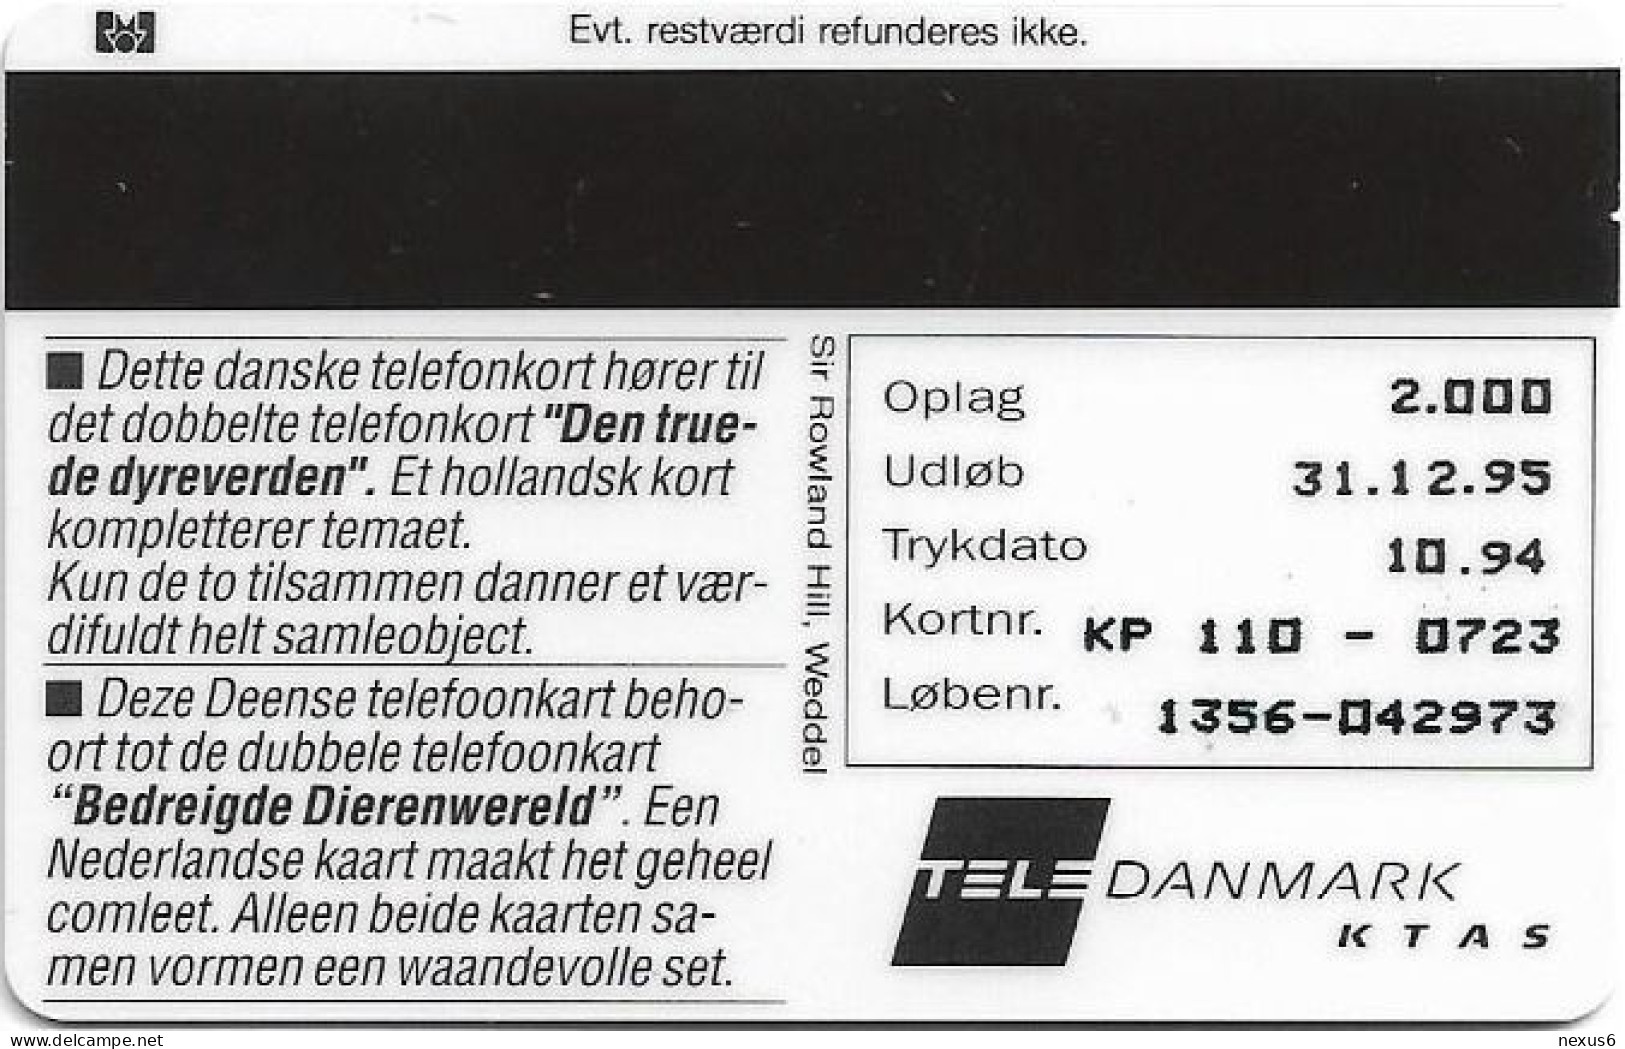 Denmark - KTAS - Crocodile, Krokodille - TDKP110 - 10.1994, 5kr, 2.000ex, Used - Dänemark